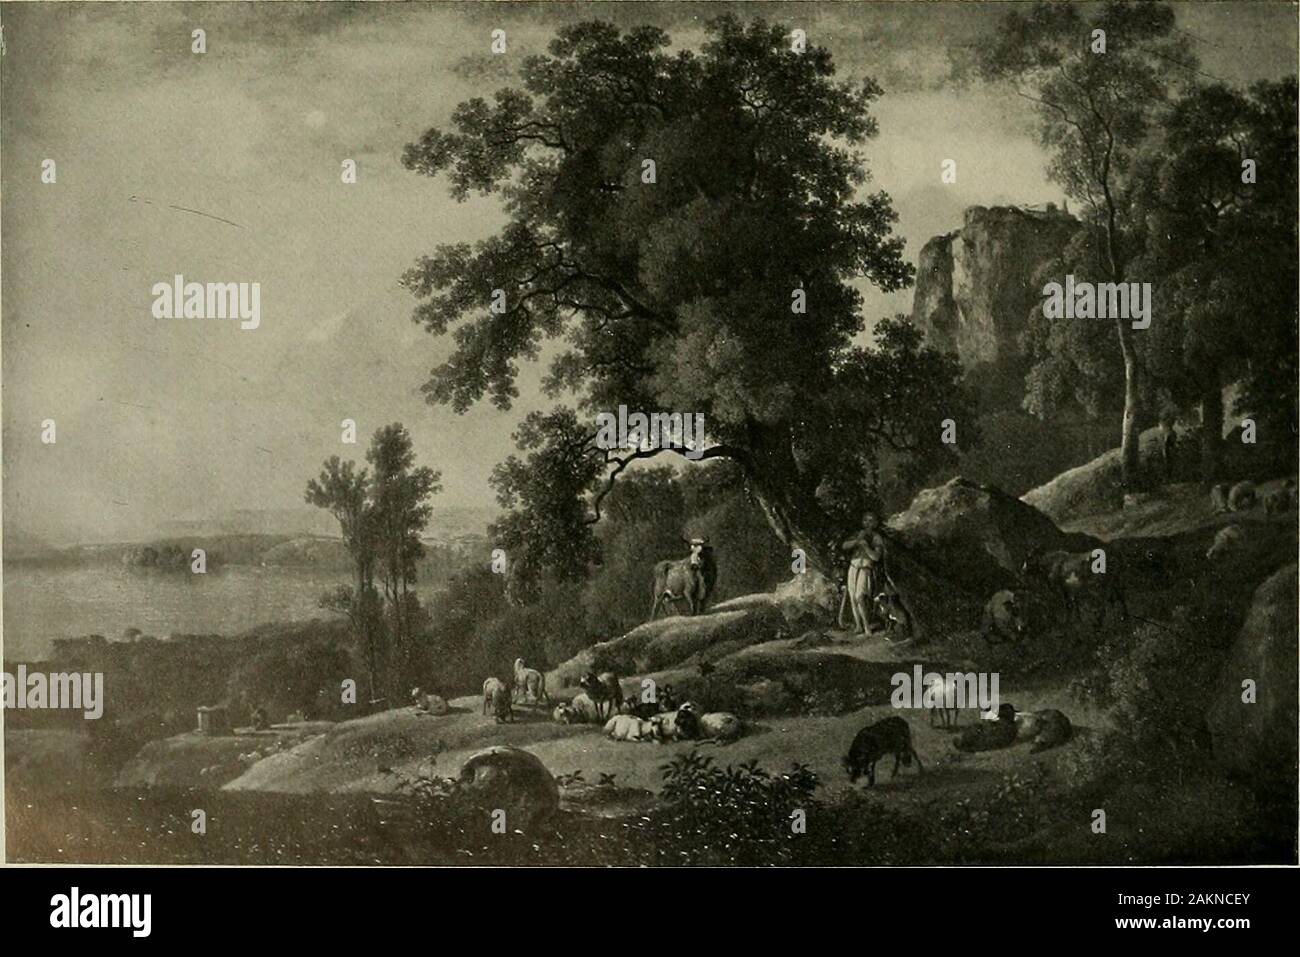 Deutsches barock und rokoko : herausgegeben im anschluss an die Jahrhundert-ausstellung deutscher kunst 1650-1800, Darmstadt, 1914 . 913. JOHANN GEORG SCHÜTZ (1755-1813) Landschaft. L. h. 0,24, br. 0,3 öKonsul H. von Passavanl, lrankfurl a. M. 537 - ^*: 914. FRANZ SCHÜTZ (1751—1781) Landschaft, l. h. o,40, br. 0,455 Städtische Gemäldegalerie, Coblenz. 915. JOHANN CHRISTIAN KLENGEL (1751-1824) Apoll mit den Herden des Admet. L. h. 0,07, br. 1,42Königl. Gemäldegalerie, Dresden 538 Stock Photo